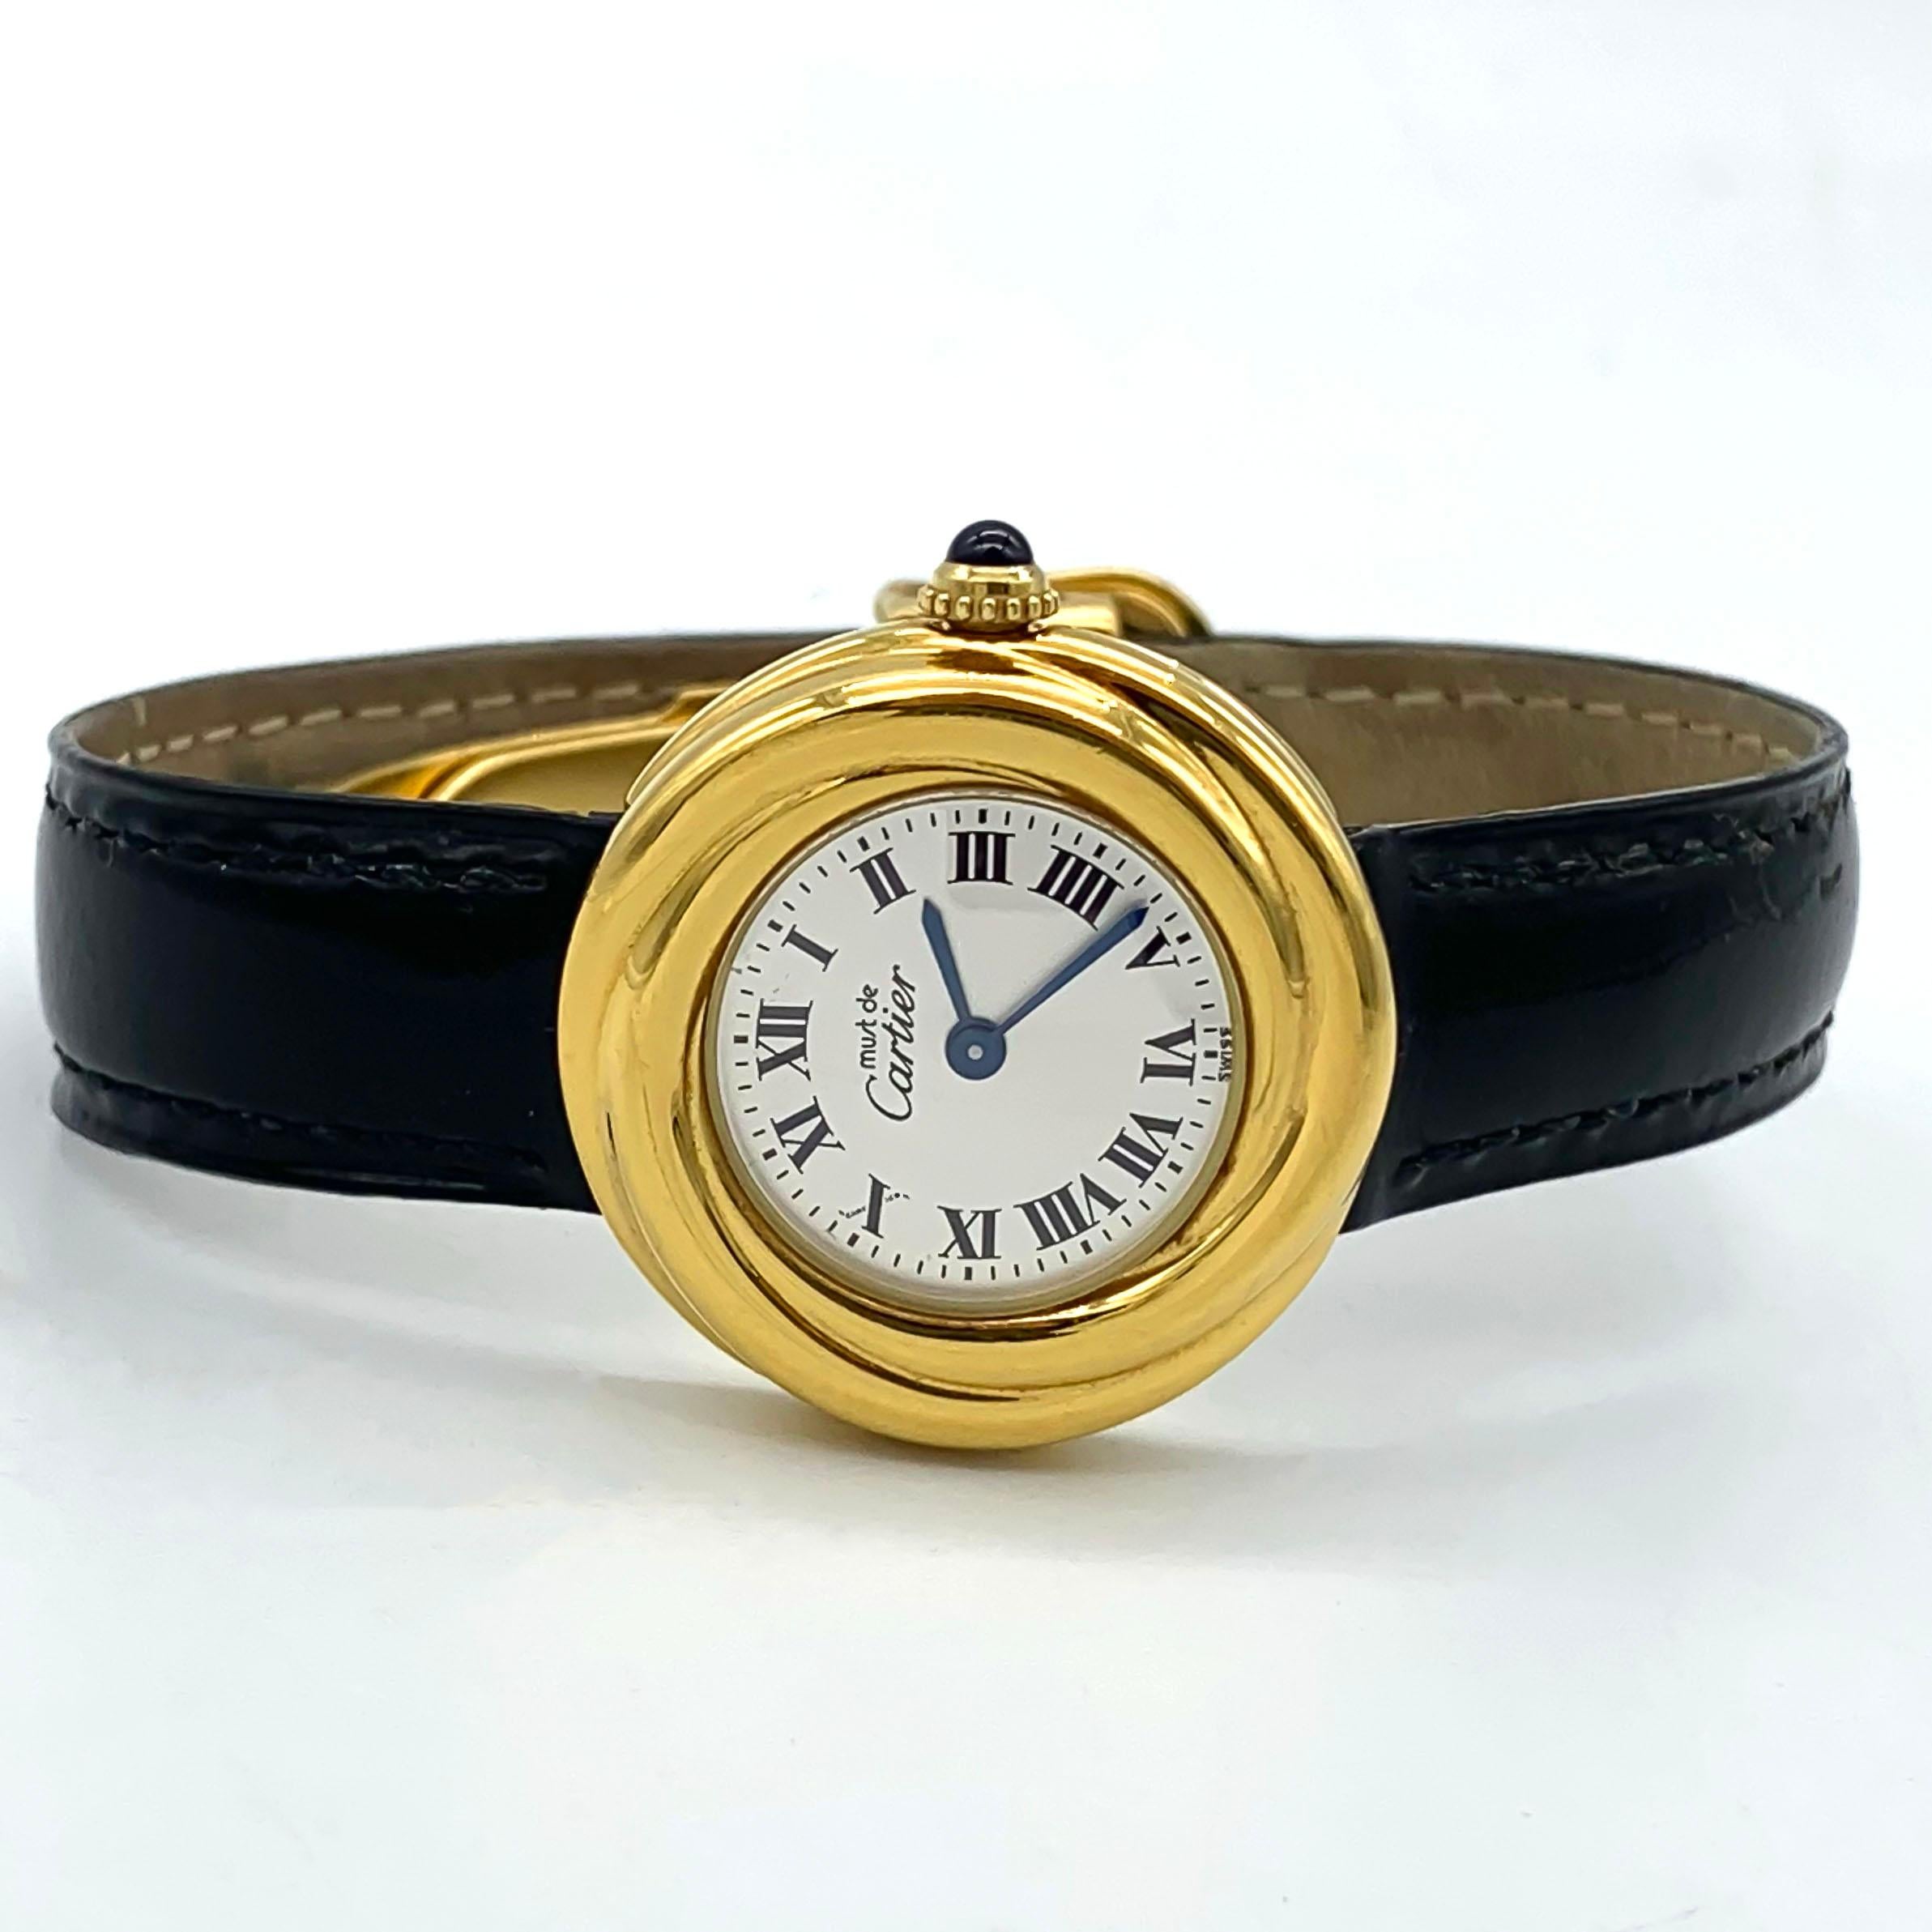 Die Cartier Trinity Vermeil Must De Cartier 925 Silber  Referenz W1010644 2735 ist eine atemberaubende Damenarmbanduhr, die zeitlose Eleganz mit moderner Funktionalität verbindet. Die von der renommierten Luxusmarke Cartier gefertigte Uhr verfügt